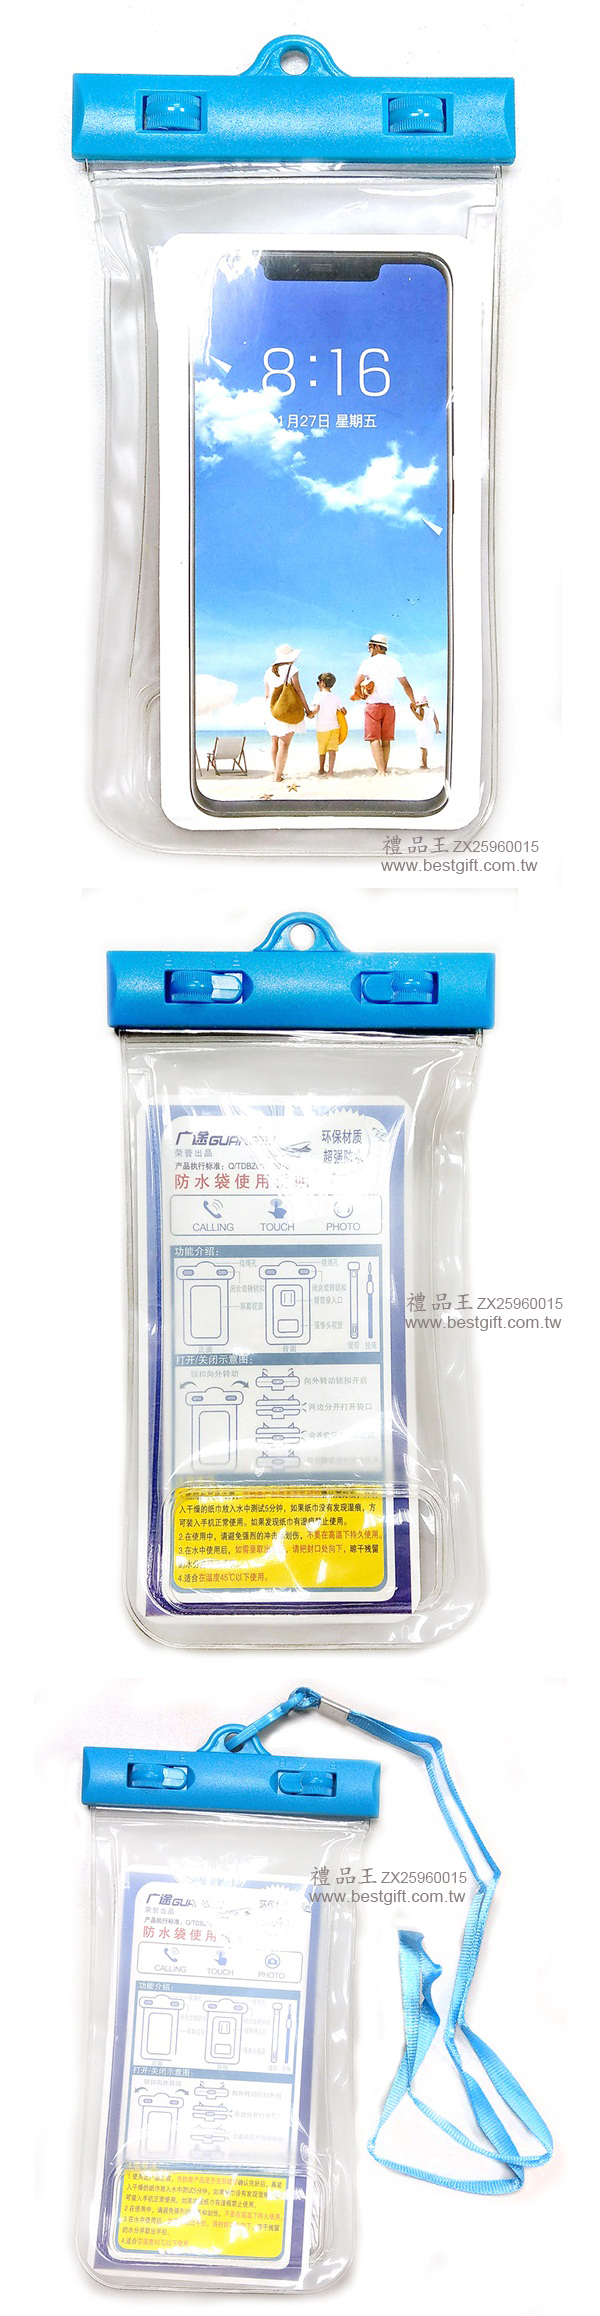 充氣高透防水觸控手機袋     商品貨號: ZX25960015